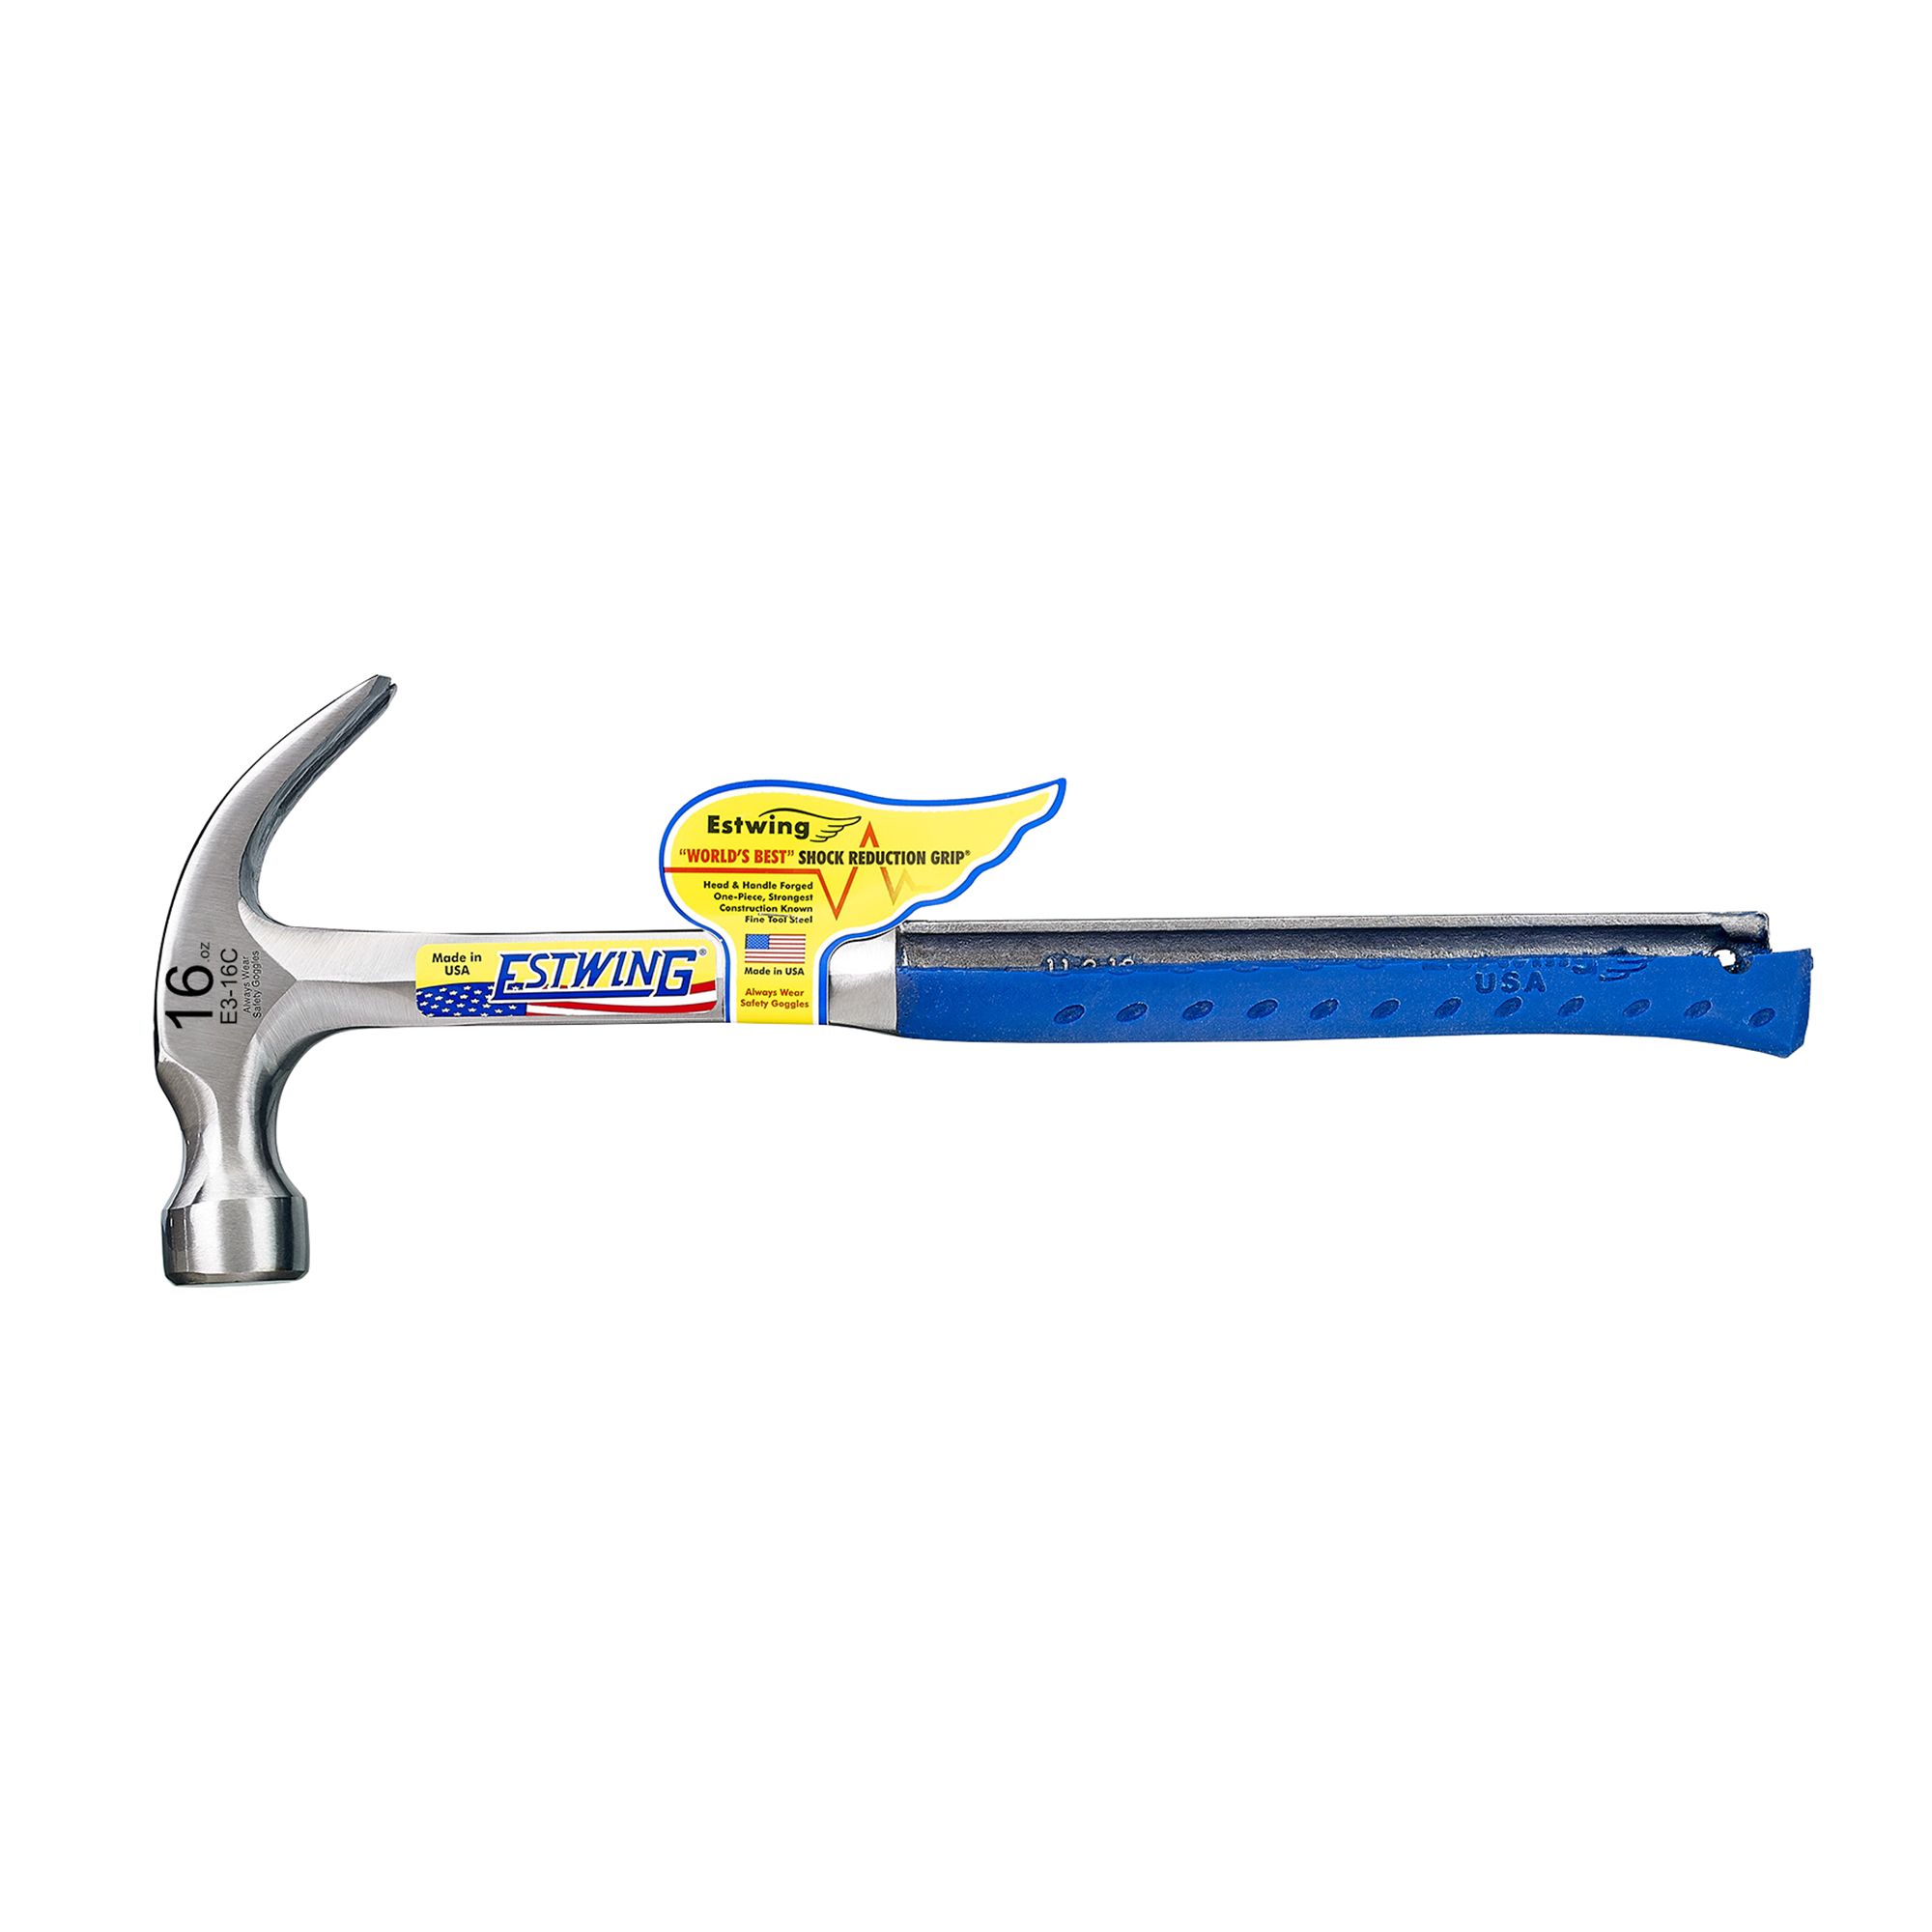 Estwing Claw Hammer 16oz E3/16C